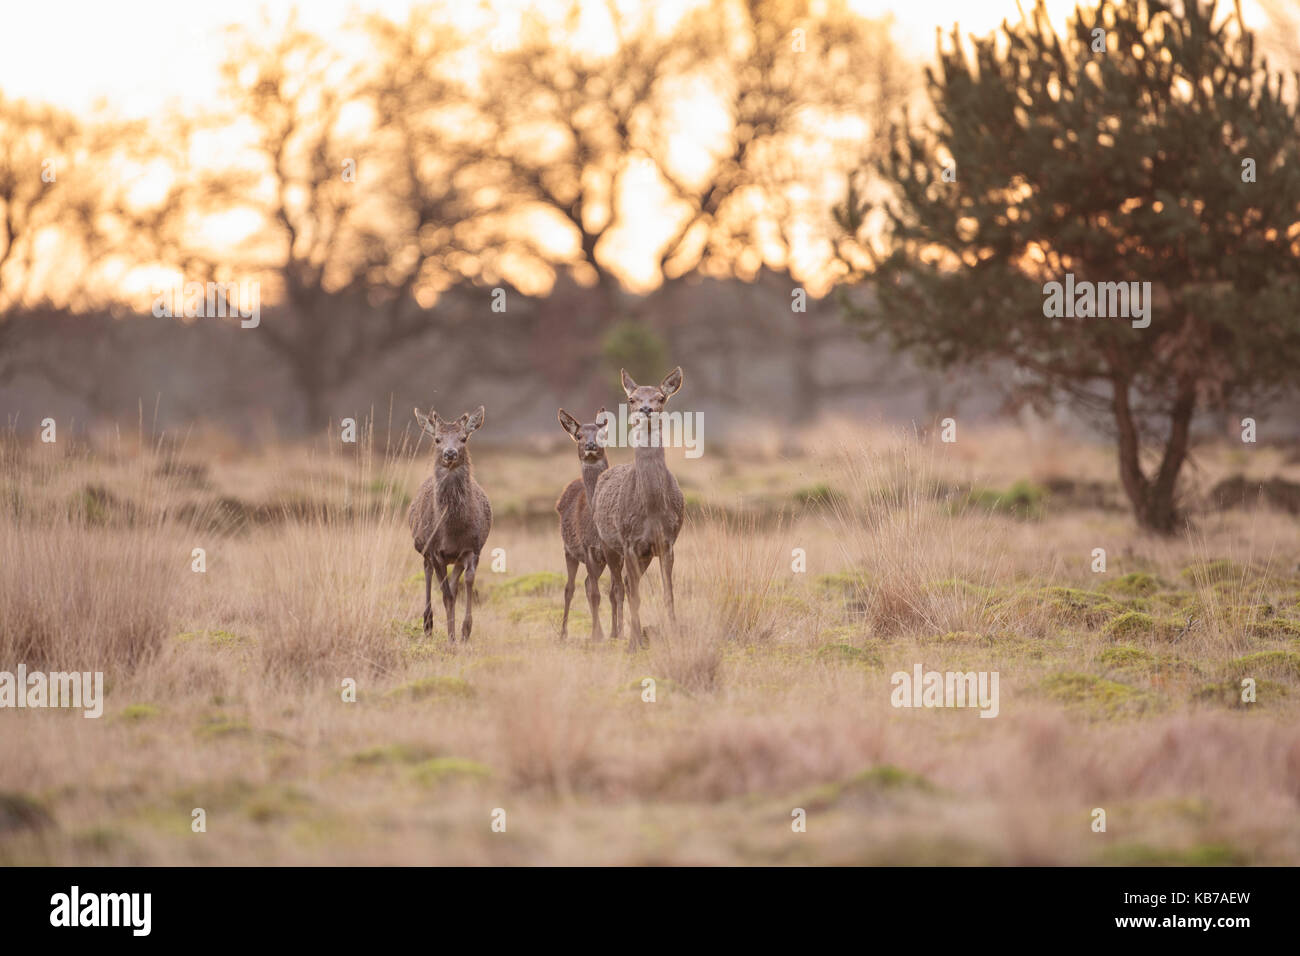 Three  Red Deer (Cervus elaphus) standing in an open field with Purple Moor-grass (Molinia caerulea), the Netherlands, gelderland, Deelerwoud Stock Photo